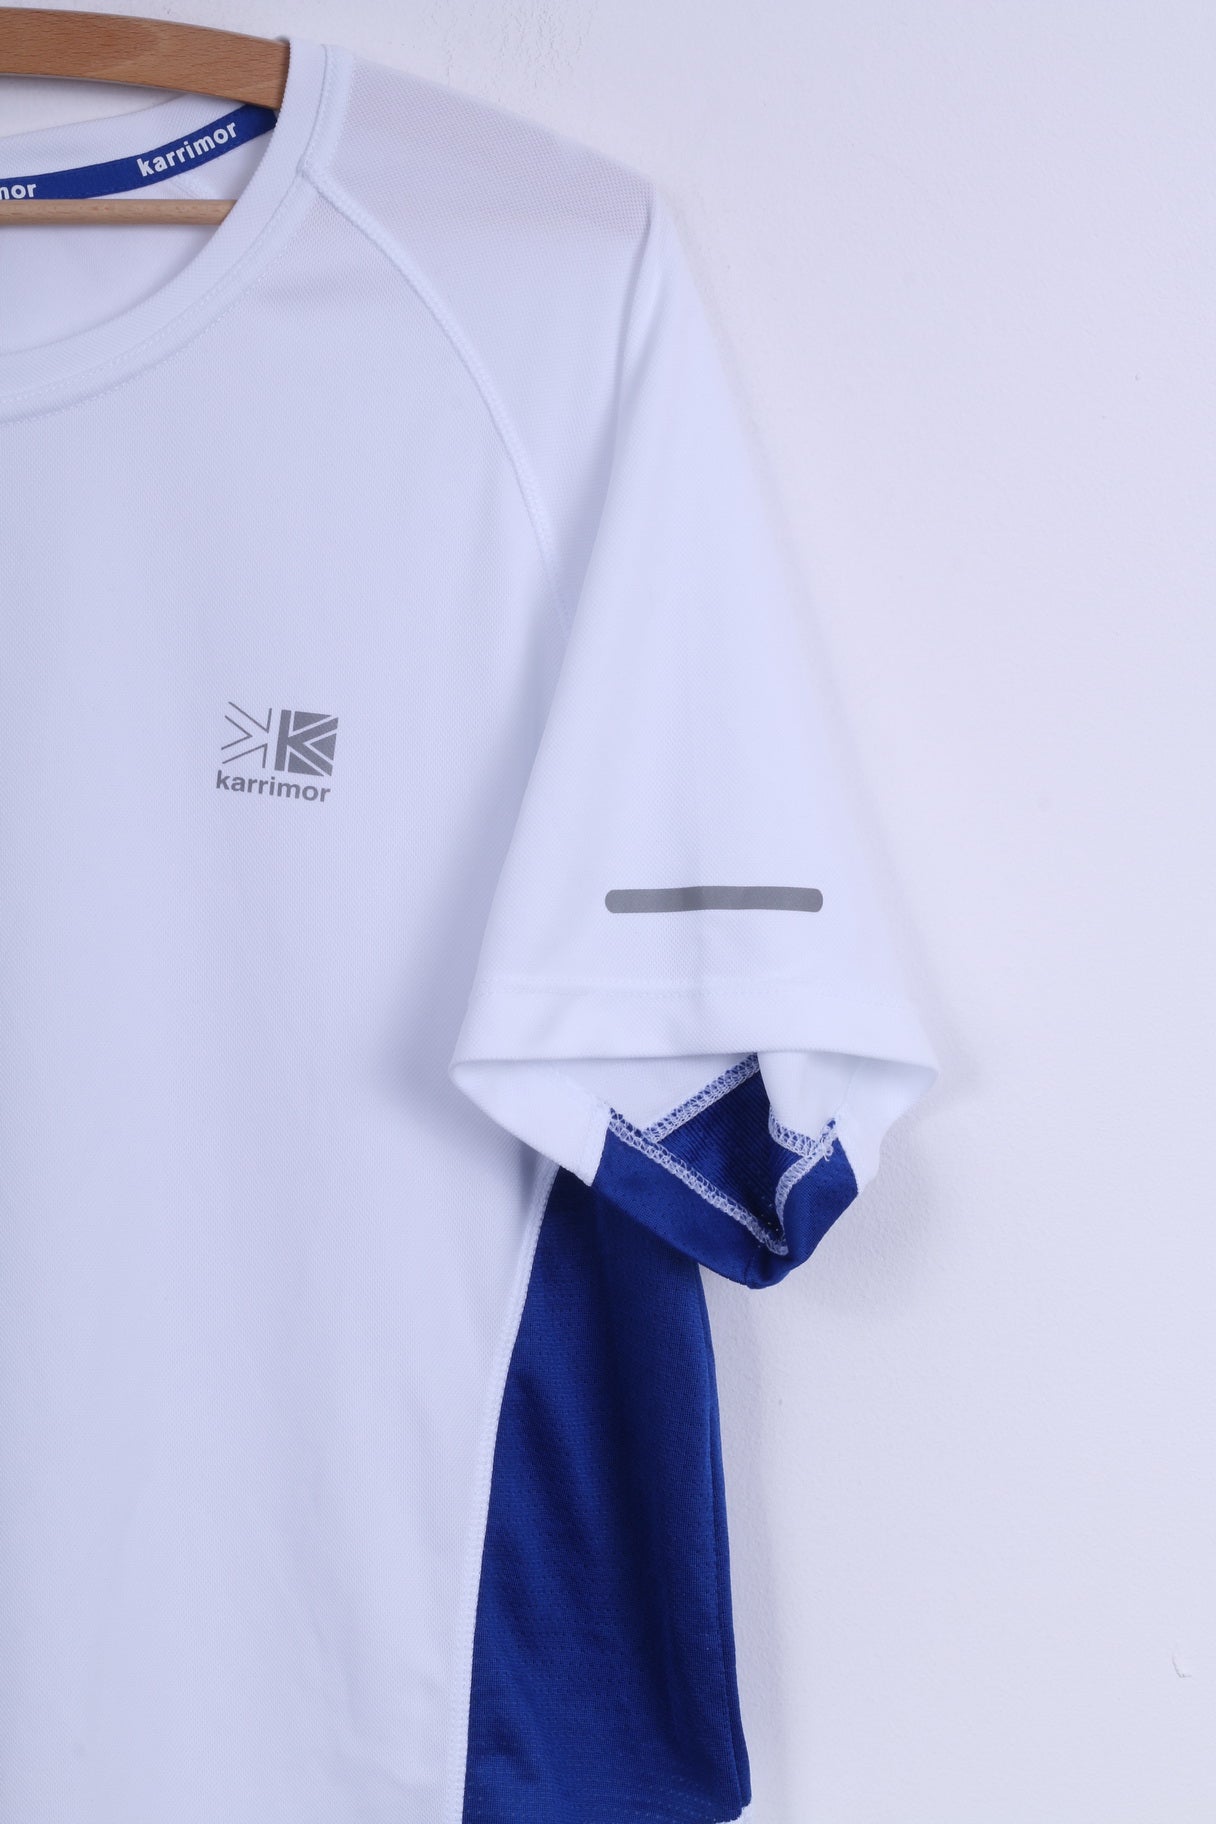 Karrimor Mens XXL T-Shirt  Running White Sport Breathable